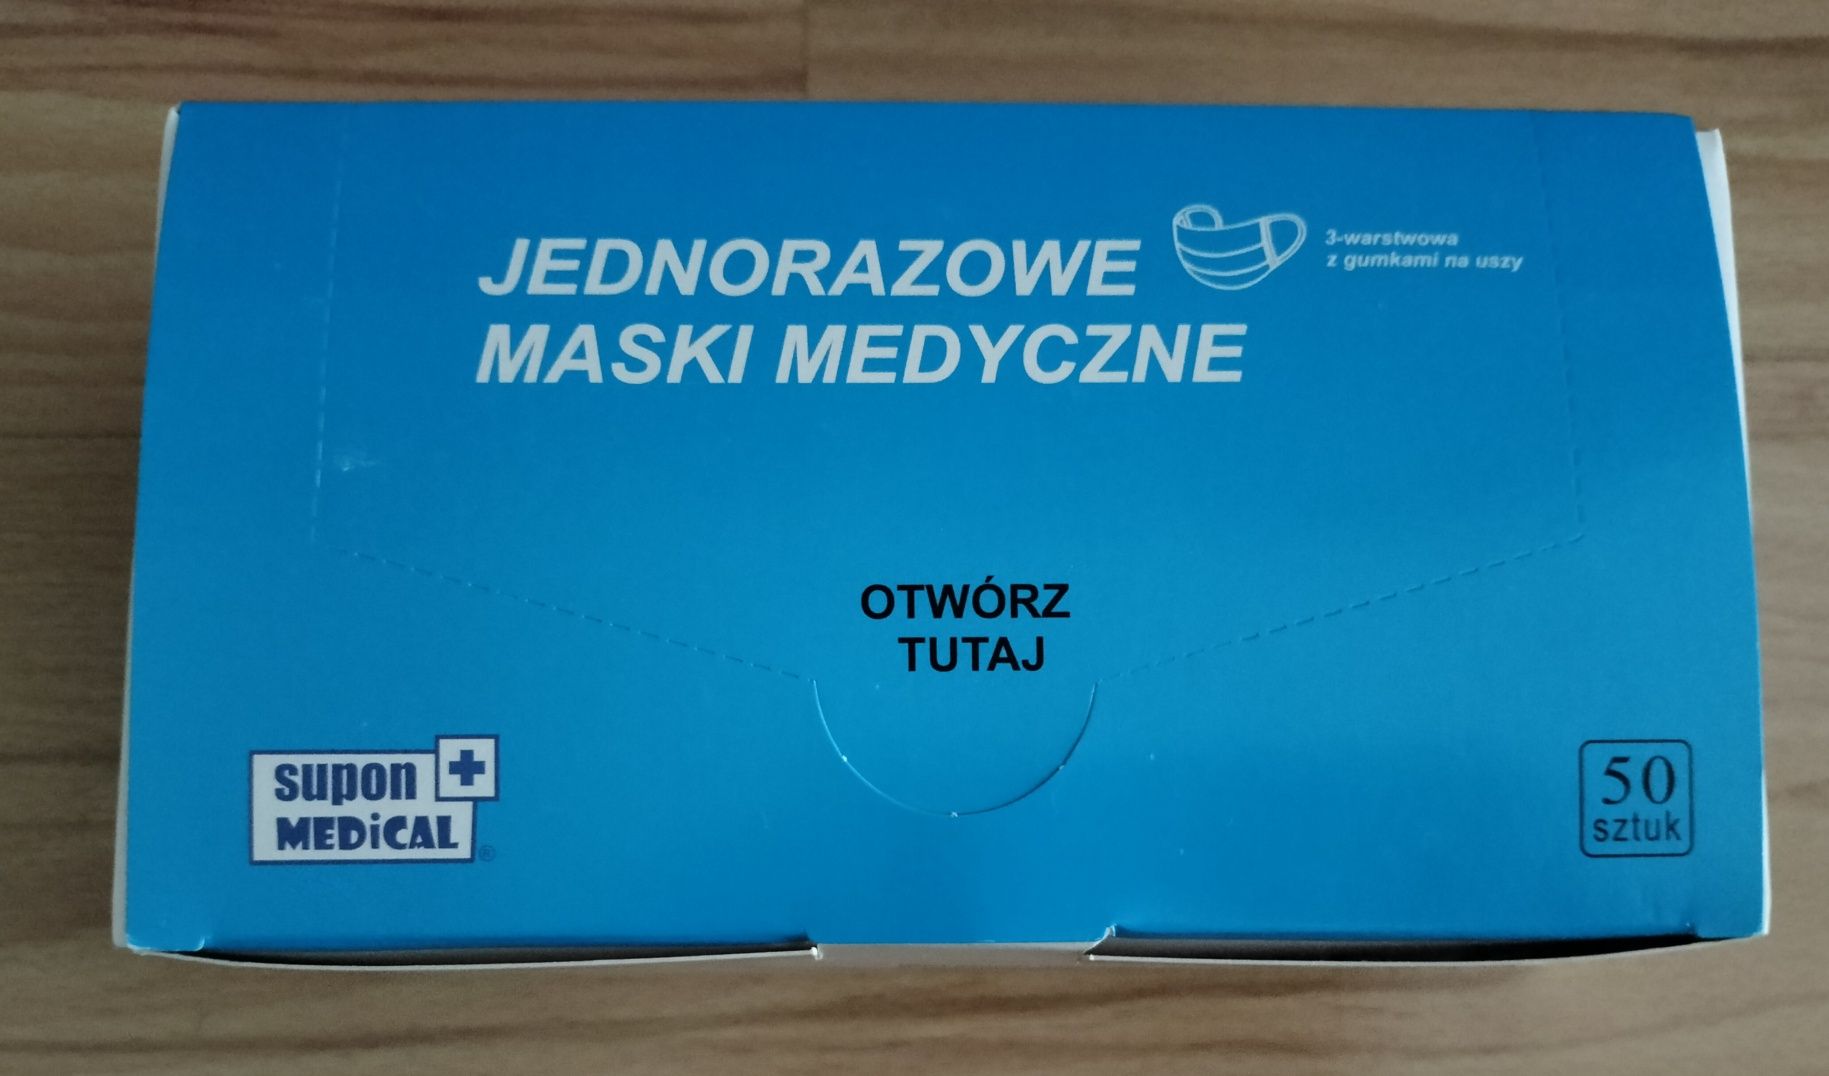 Jednorazowe maski / maseczki medyczne Supon Medical - zestaw 50szt.